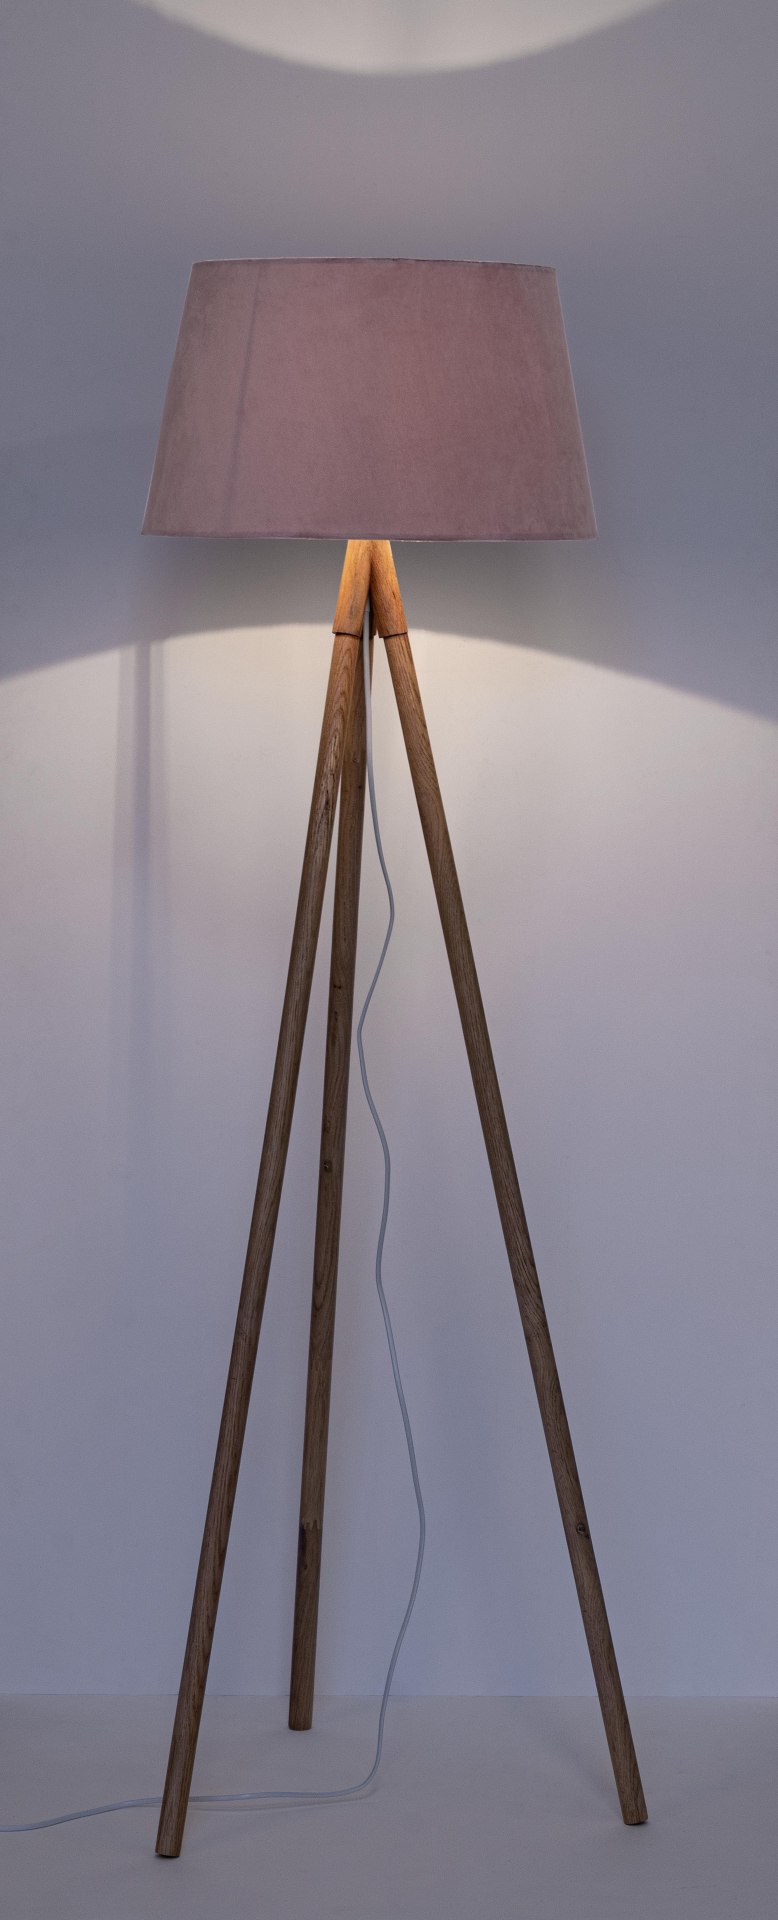 Die Stehleuchte Wallas überzeugt mit ihrem klassischen Design. Gefertigt wurde sie aus Tannenholz, welches einen natürlichen Farbton besitzt. Der Lampenschirm ist aus Samt und hat eine rosa Farbe. Die Lampe besitzt eine Höhe von 152 cm.